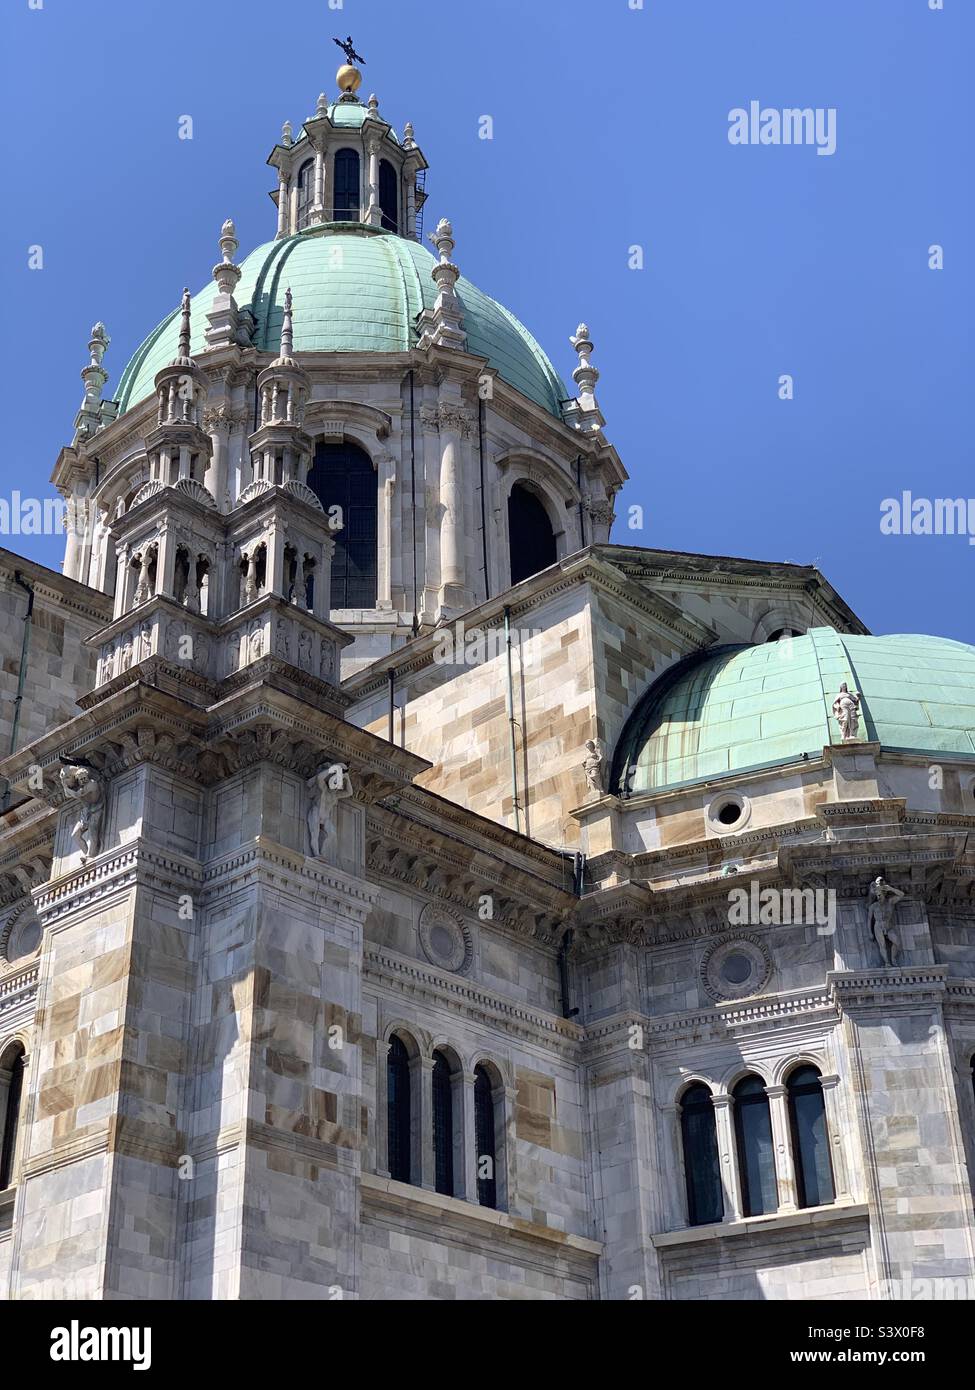 Cattedrale di Santa Maria Assunta - Duomo di Como, Italy Stock Photo